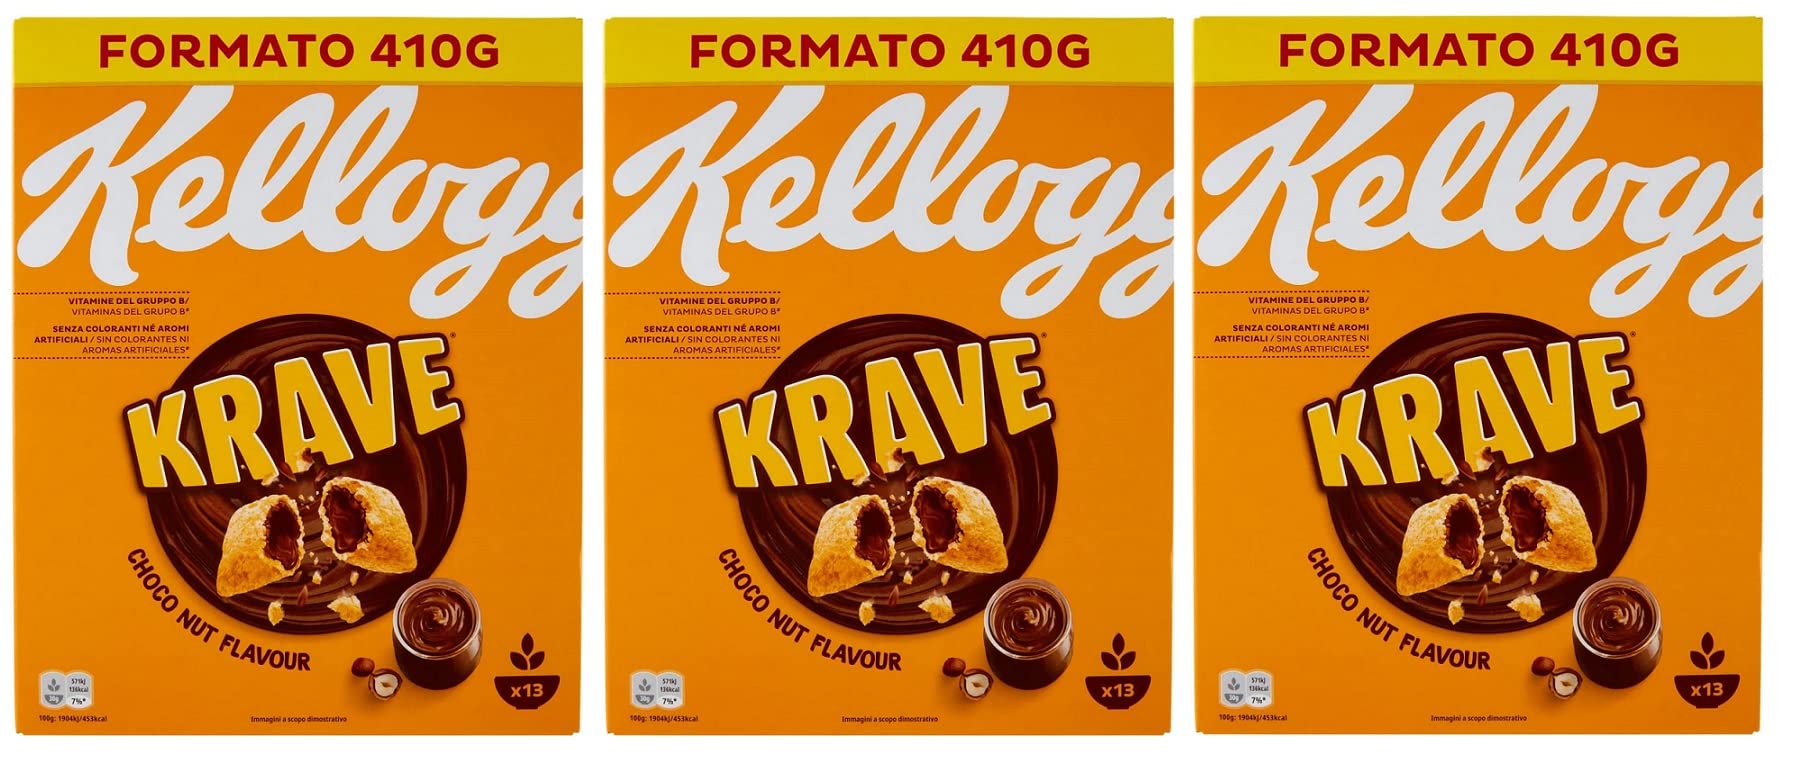 3x Kellogg's Krave Choco Nut Gemischte Cerealien Bündel mit Schokoladenfüllung mit Haselnuss Geschmack und Vitaminzusatz 410g Packung